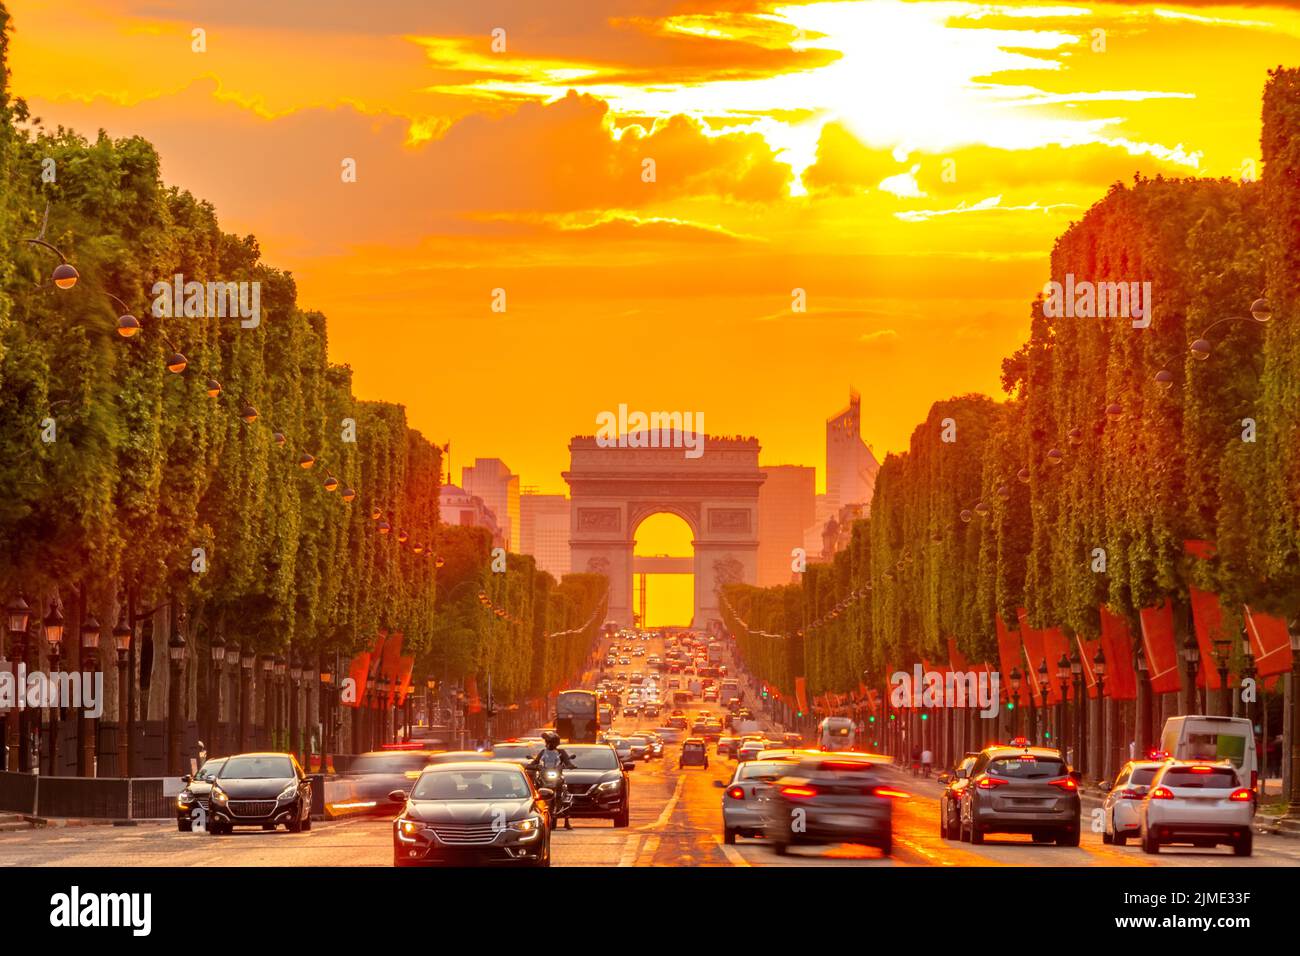 Golden Summer Sunset sur les champs Elysées à Paris Banque D'Images